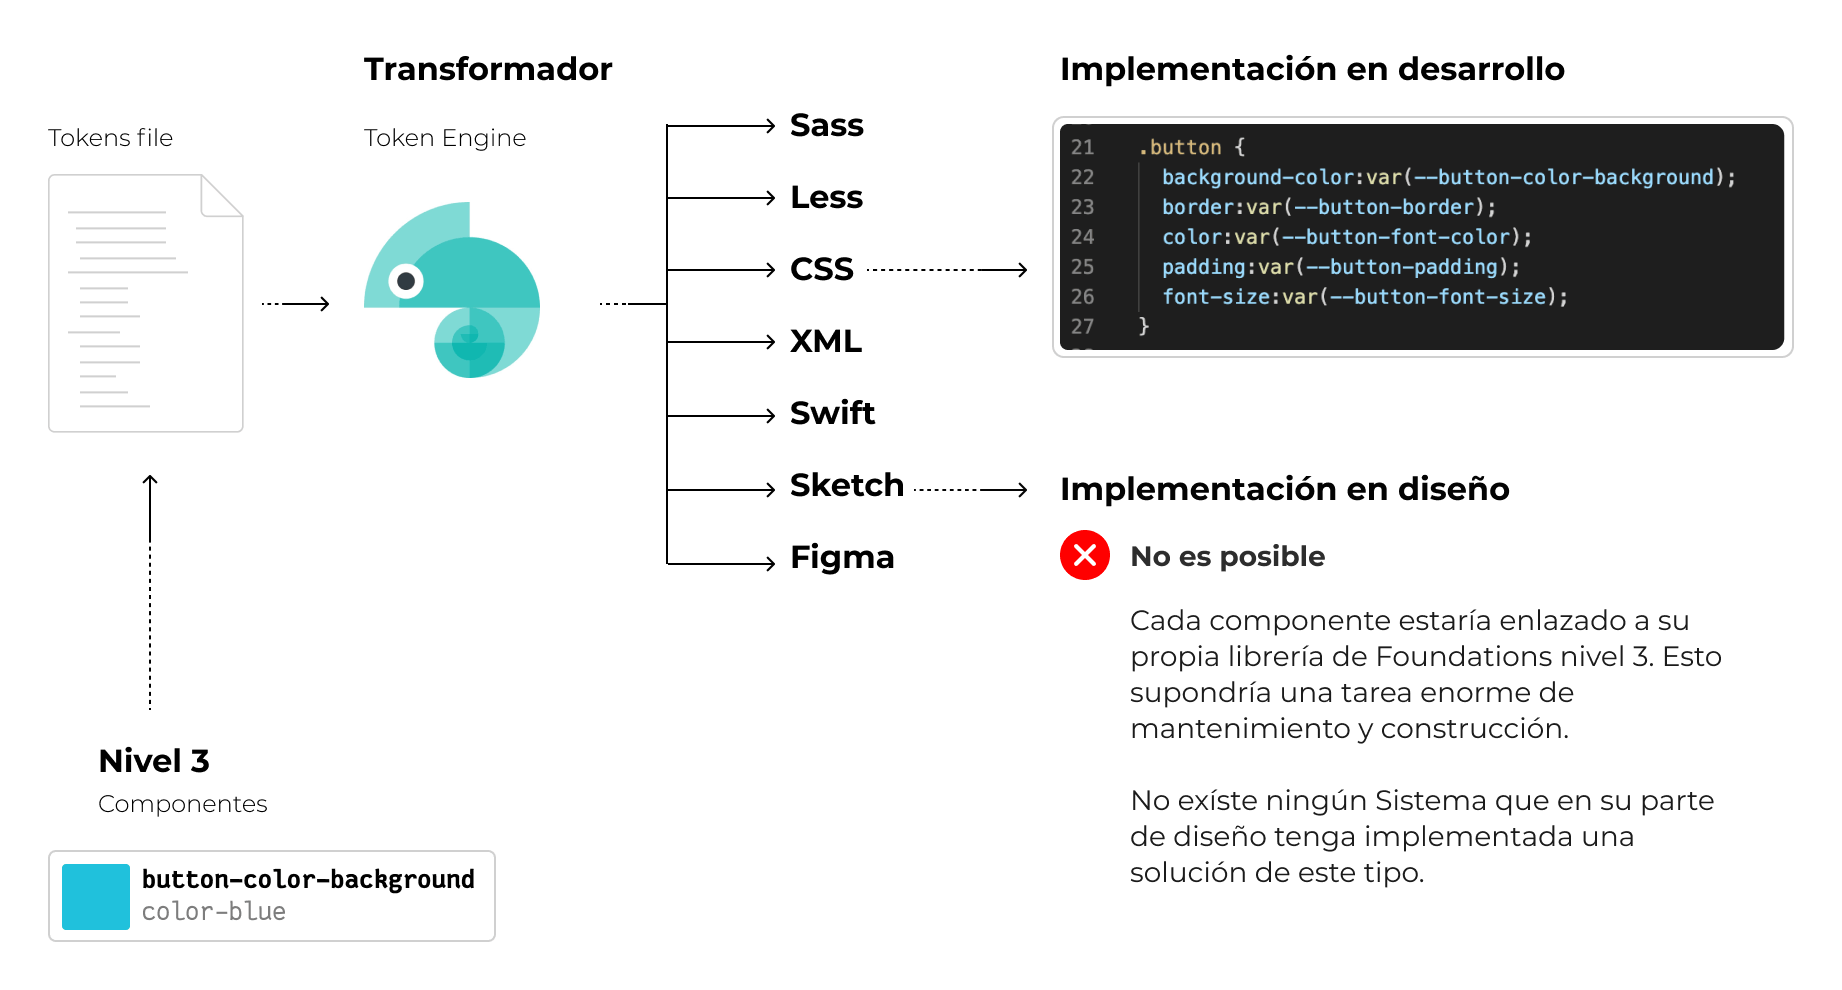 Imagen mostrando los pasos entre niveles de token, transformador en output css y su implementación en desarrollo.